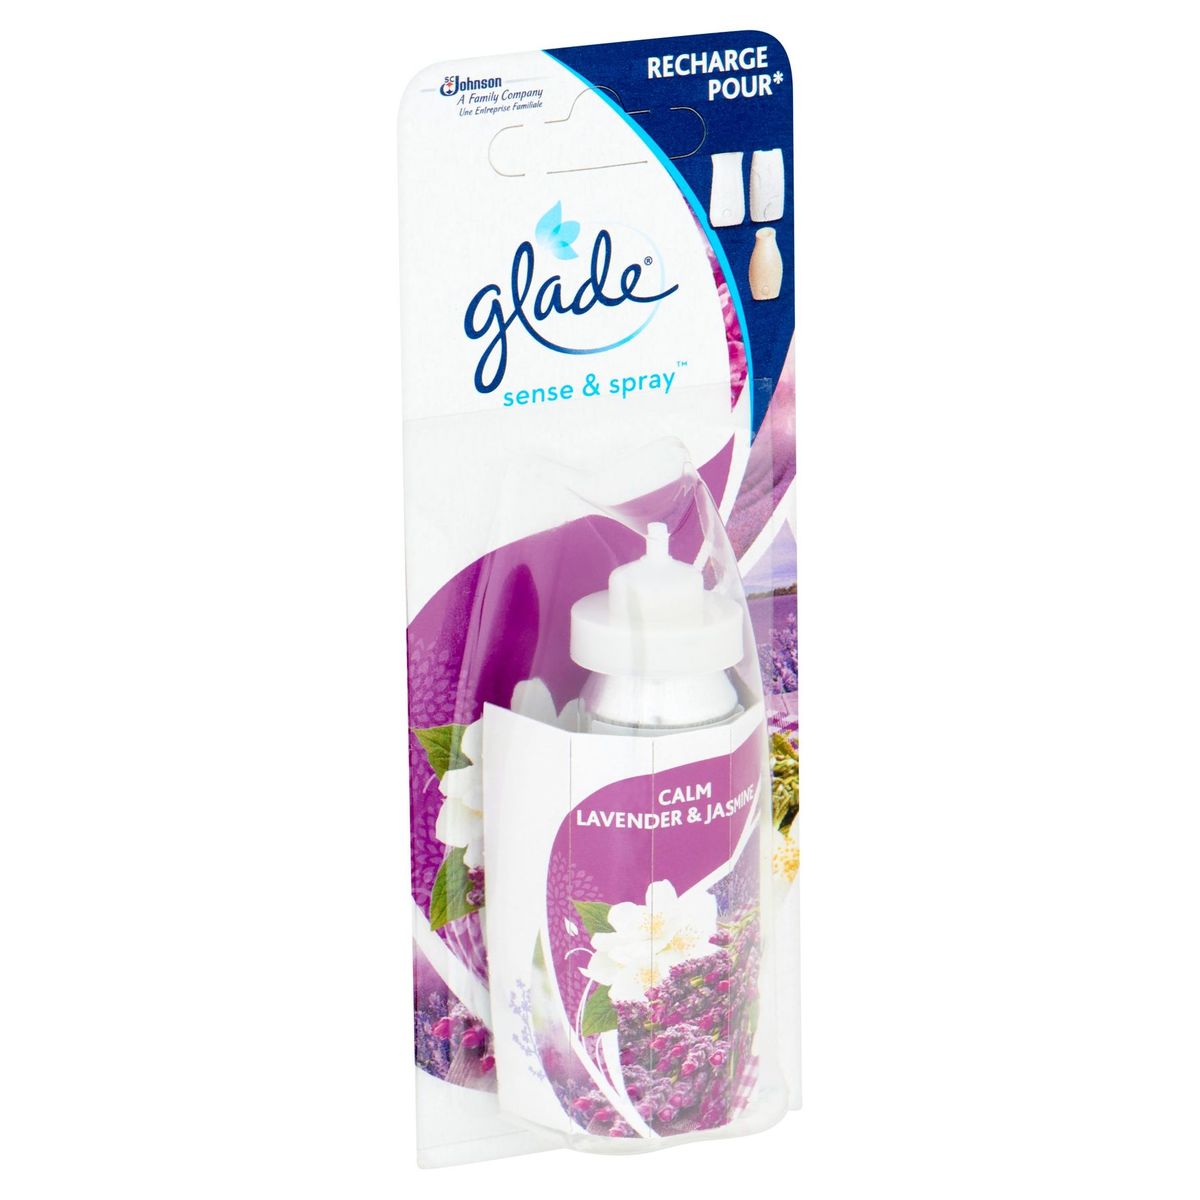 Glade Sense & Spray Calm Lavender & Jasmine 18 ml